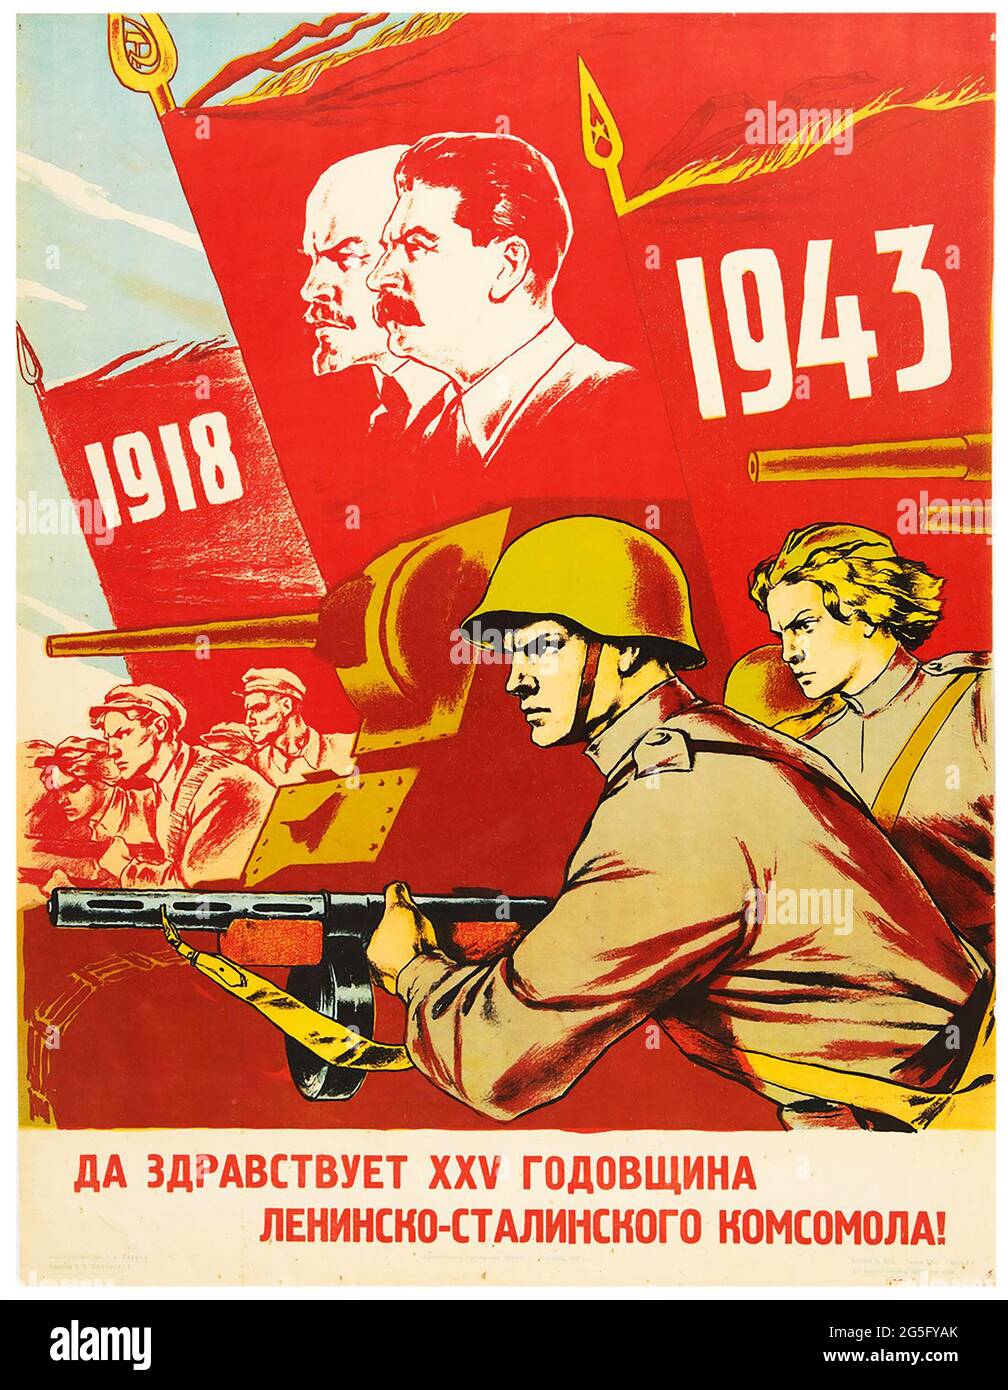 Affiche vintage – 25th anniversaire – Komsomol URSS propagande soviétique de la Seconde Guerre mondiale, 1943 Banque D'Images